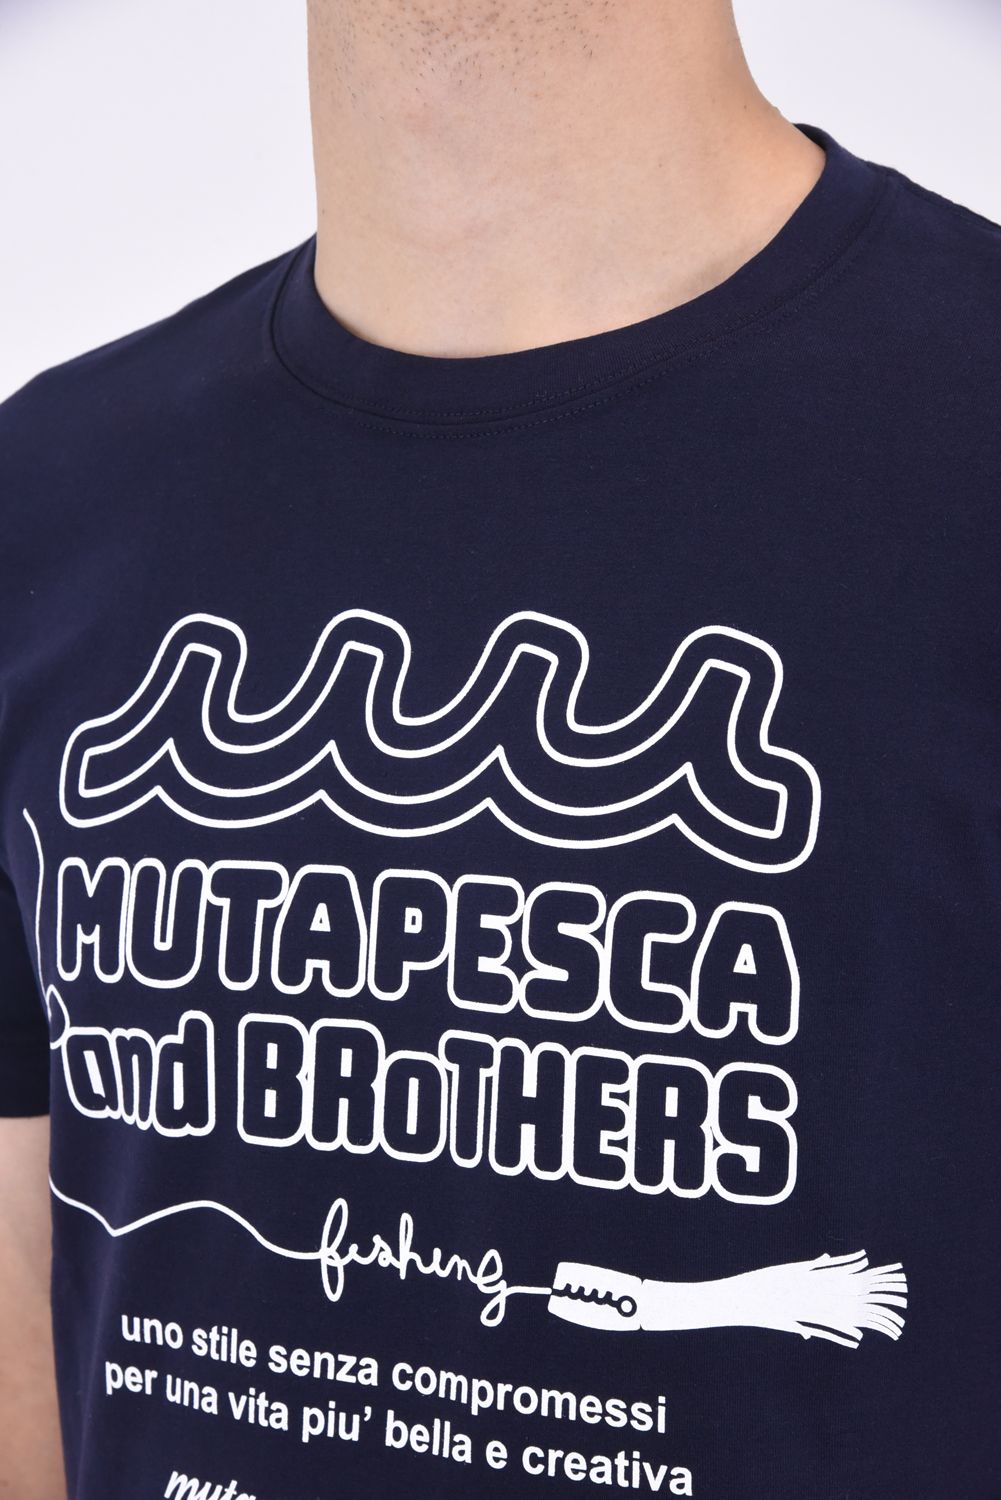 muta - 【muta MARINE Fishing】 AND BLOTHERS T-SHIRT / MUTA PESCA